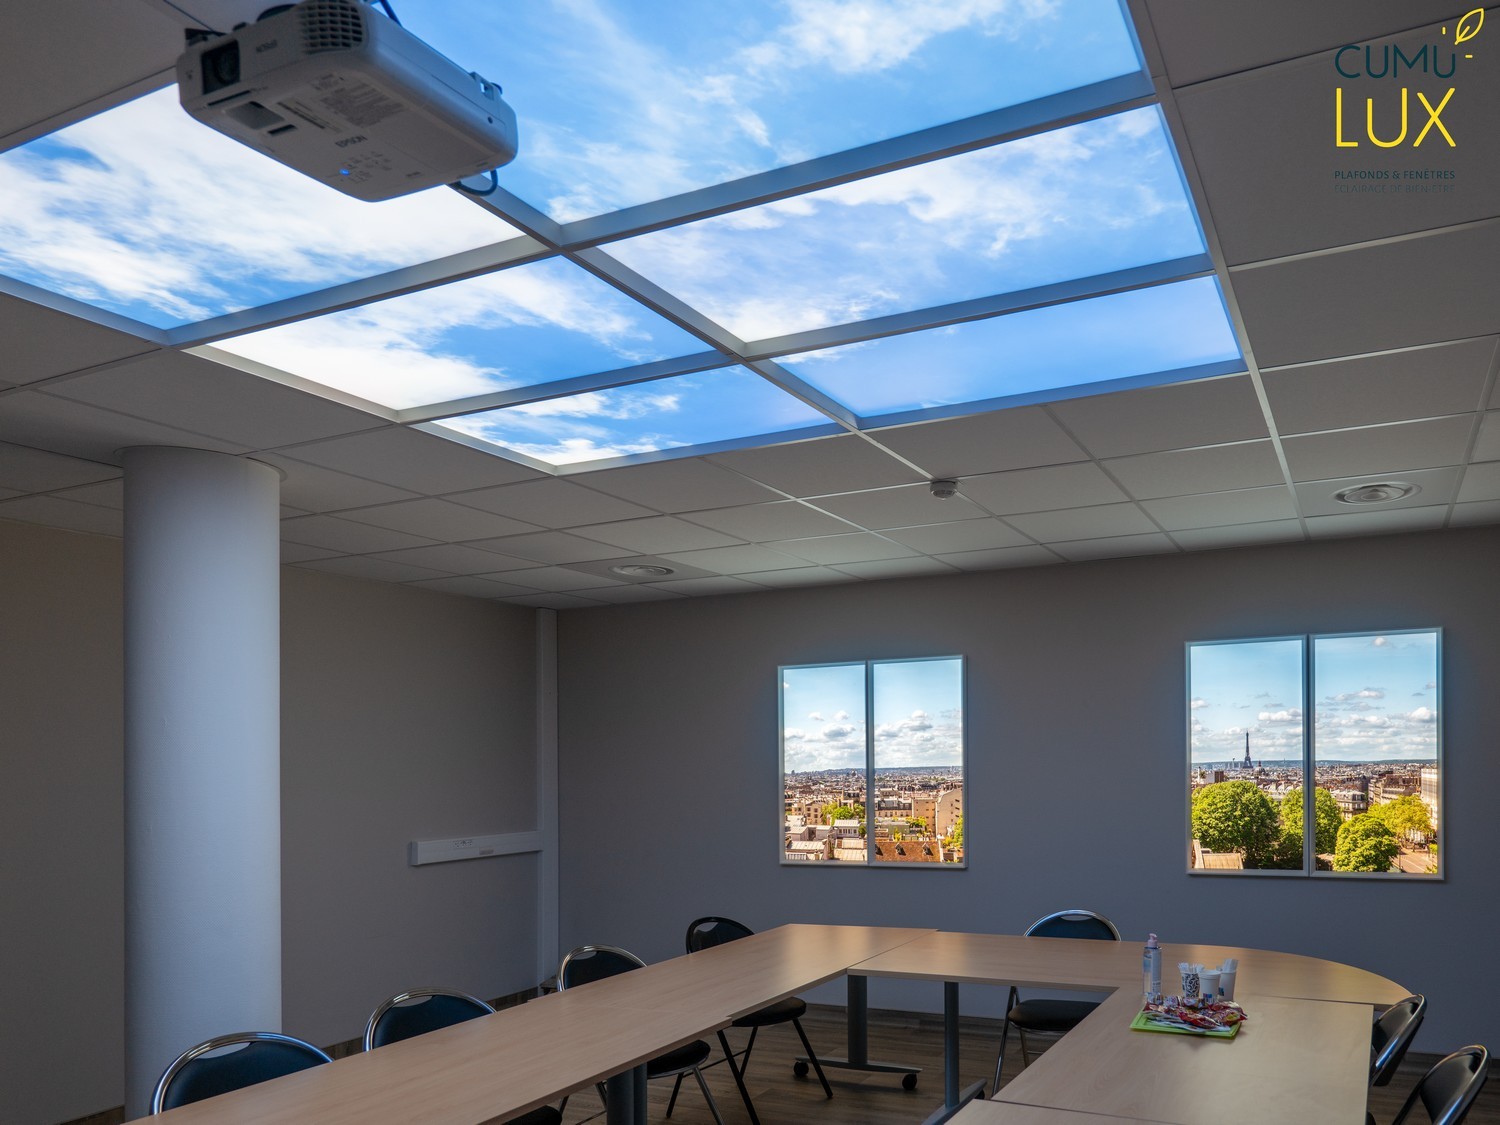 Faux plafond Cumulux de 6 dalles pour illuminer une salle de réunion.